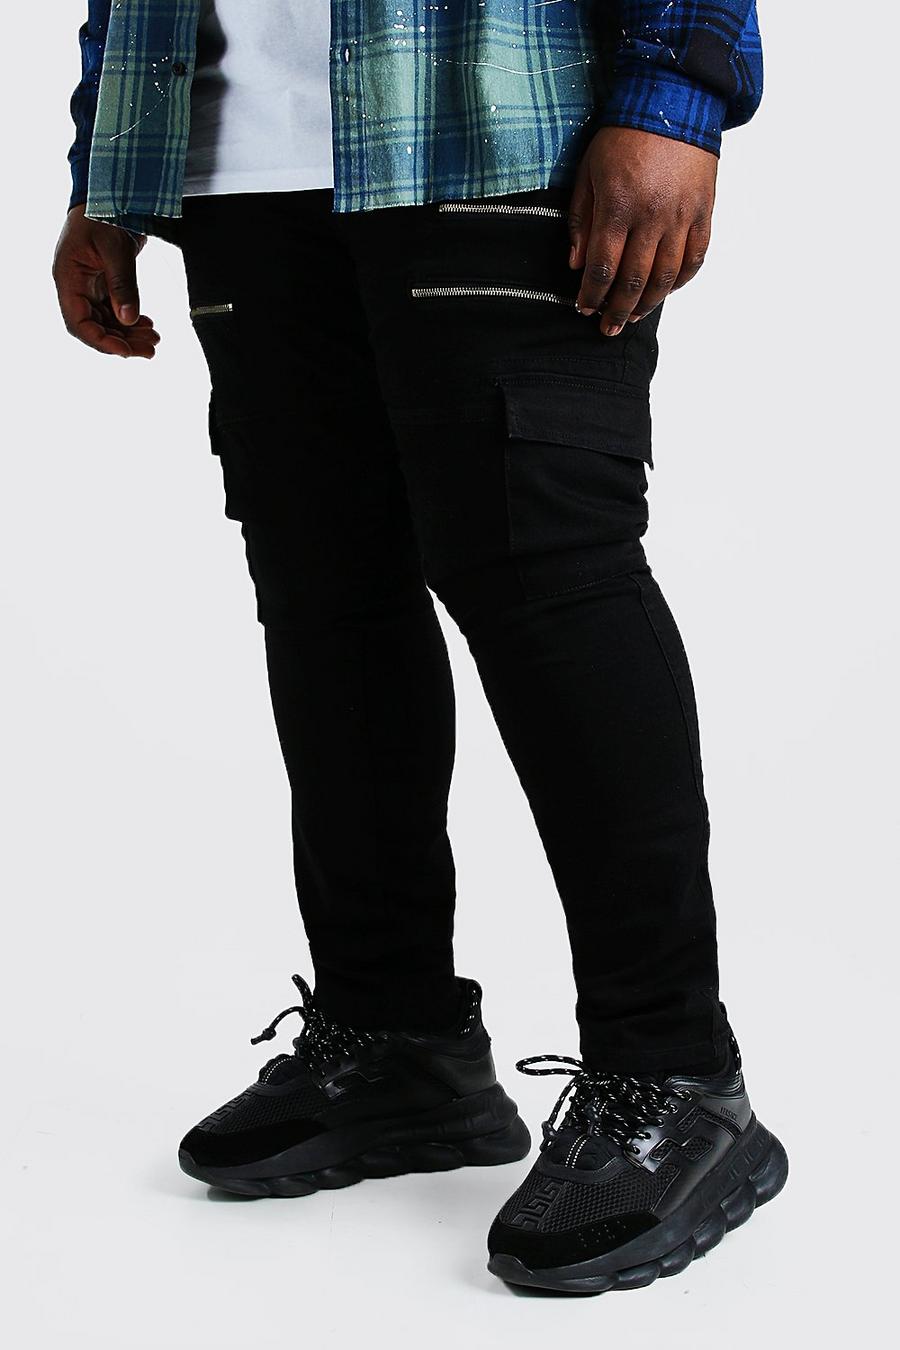 שחור מכנסי ג'ינס סופר סקיני בסגנון אופנוענים עם רוכסן לגברים גדולים וגבוהים image number 1